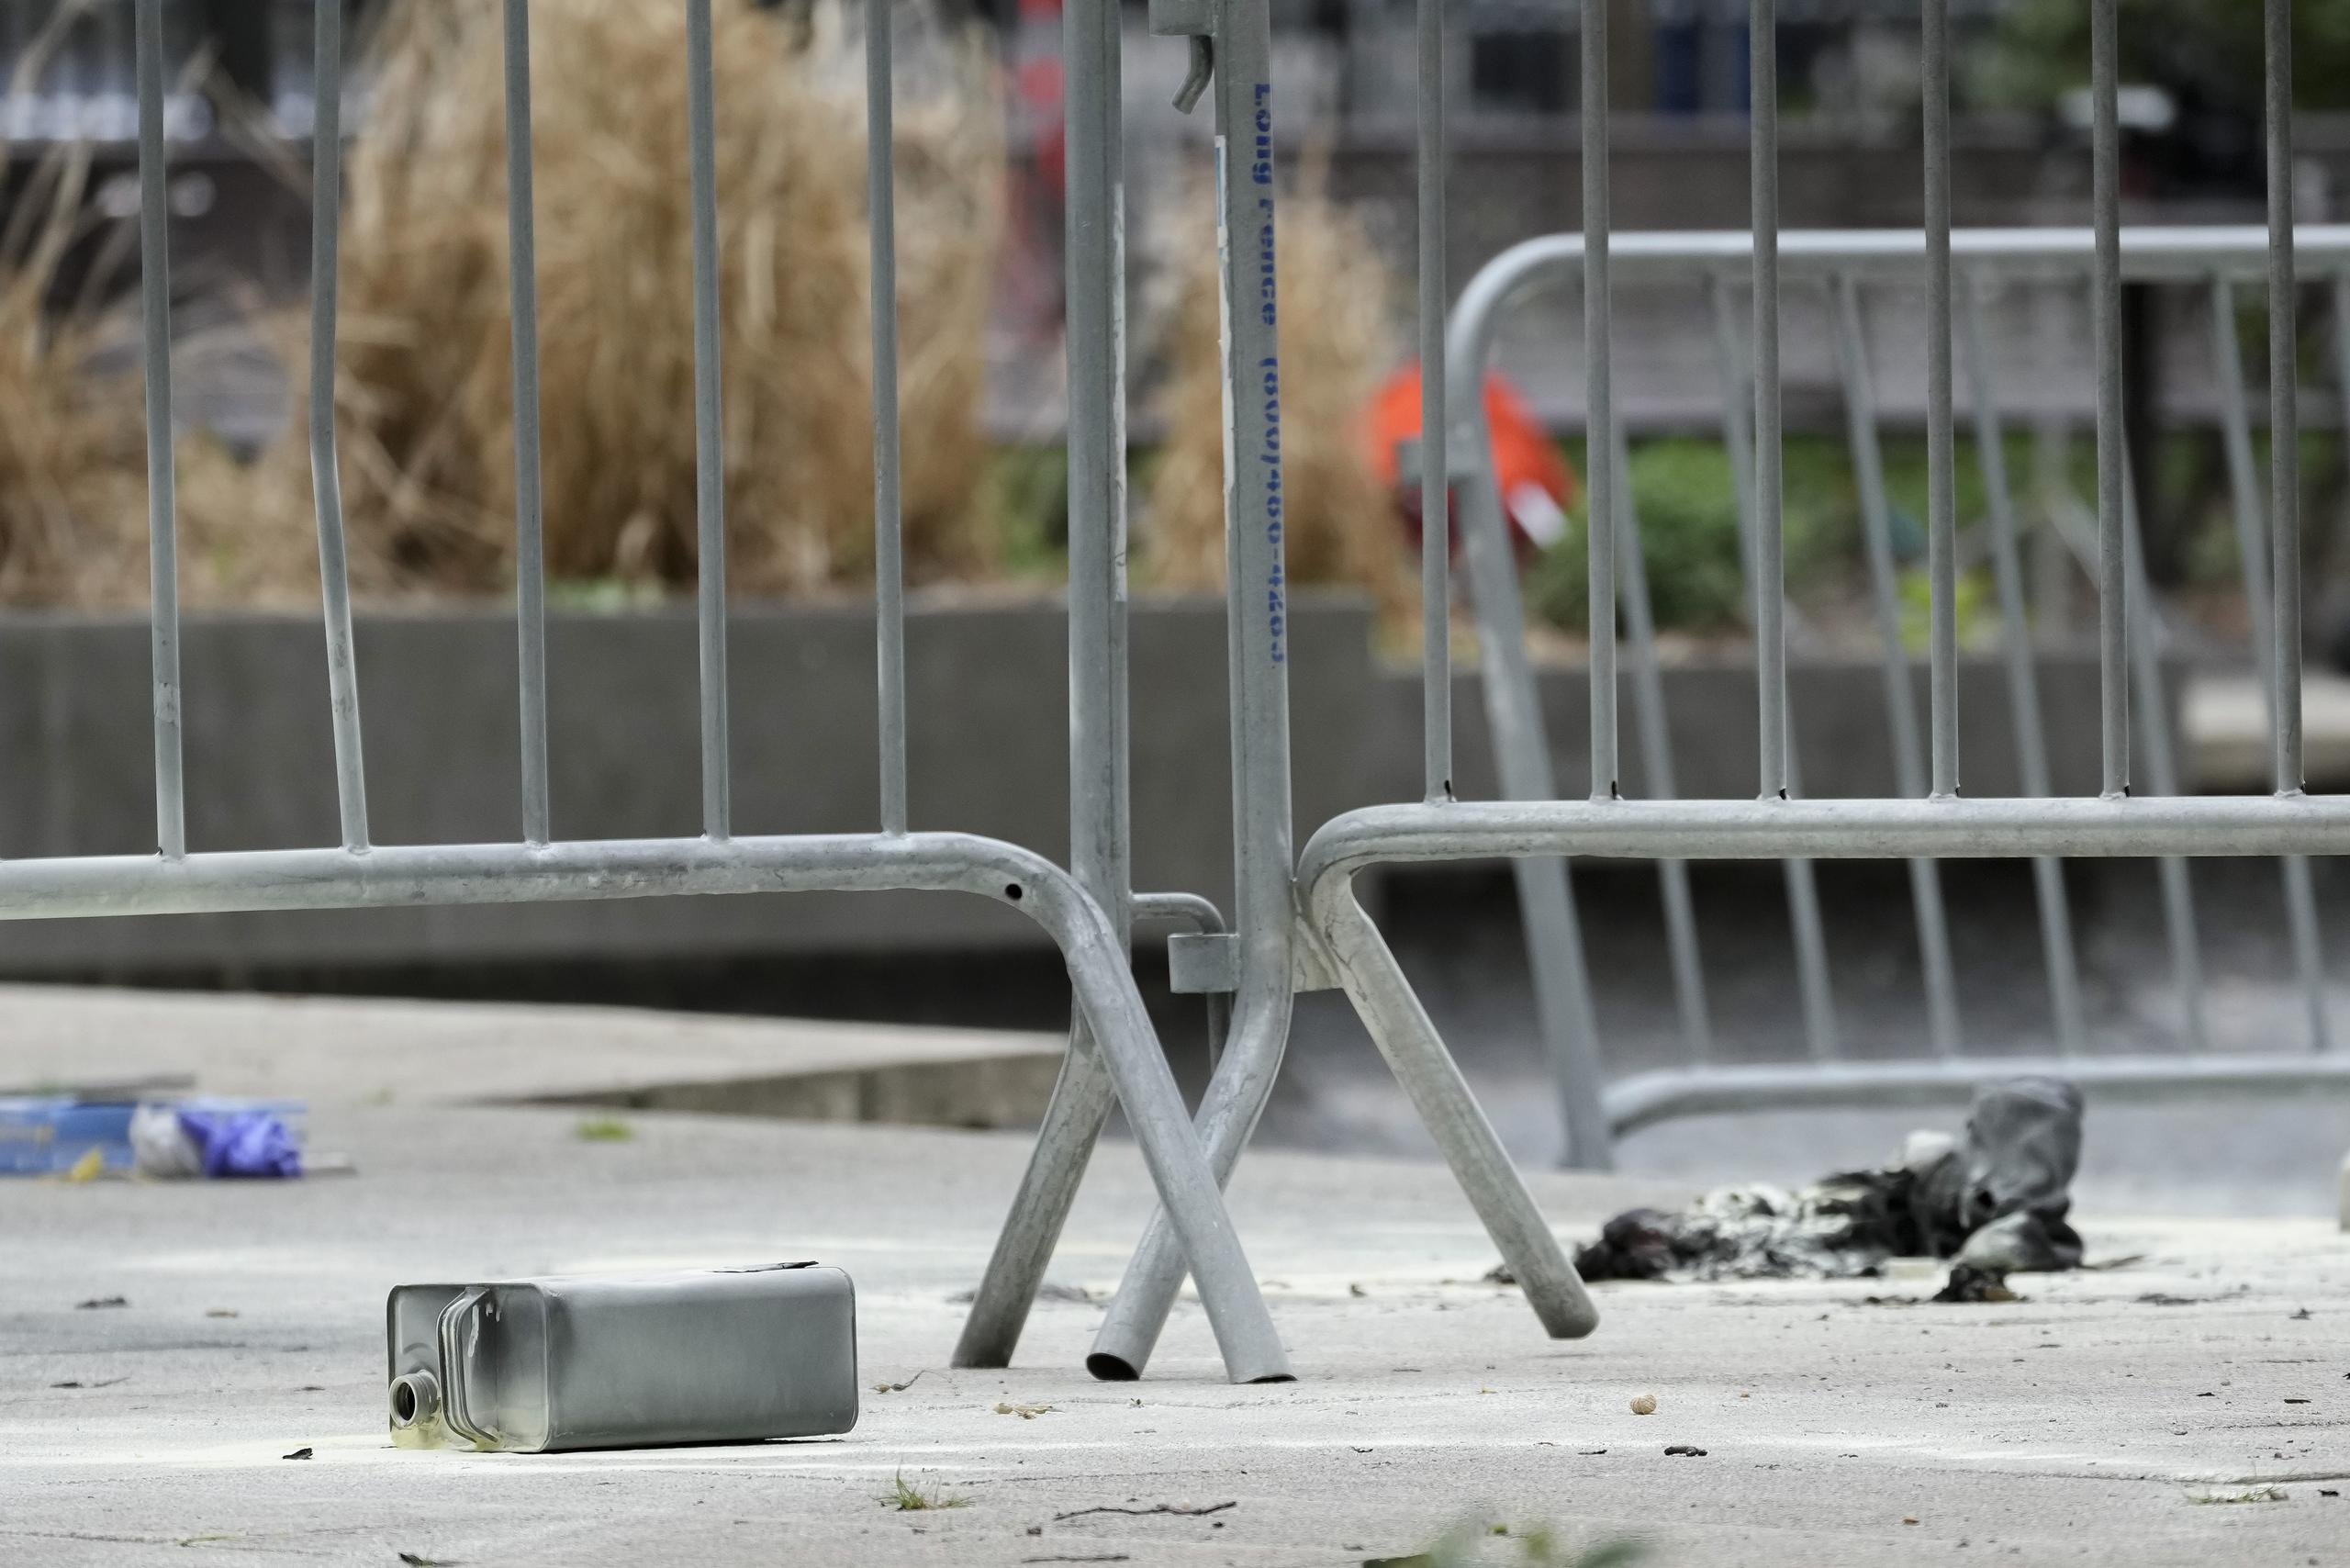 Una lata de metal, tirada en el piso, fue captada cerca del lugar donde un hombre se prendió fuego, en un parque frente a un tribunal de Manhattan.